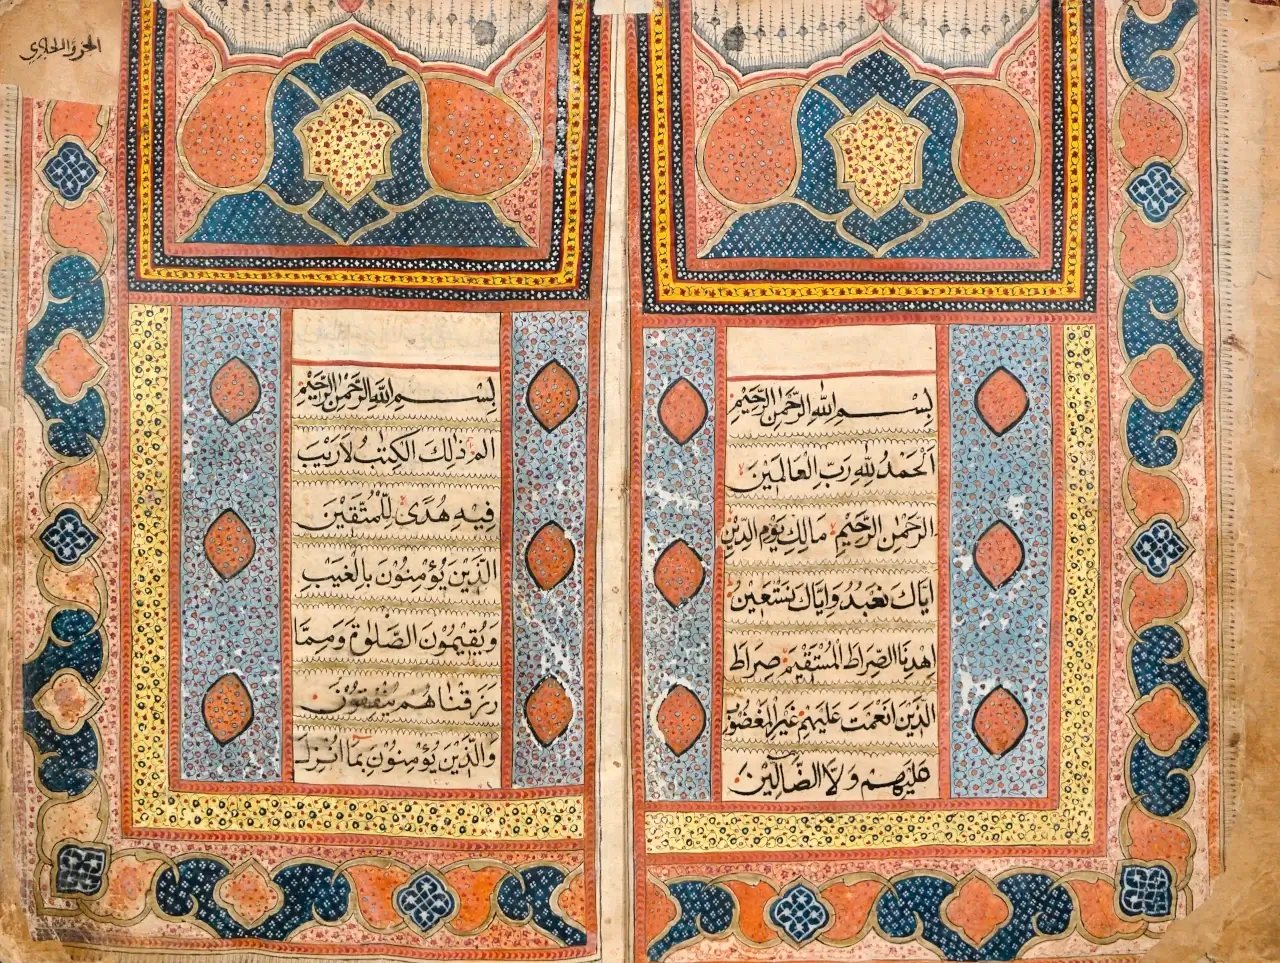 الفن الإسلامي في عمان - الخط العربي كمثال